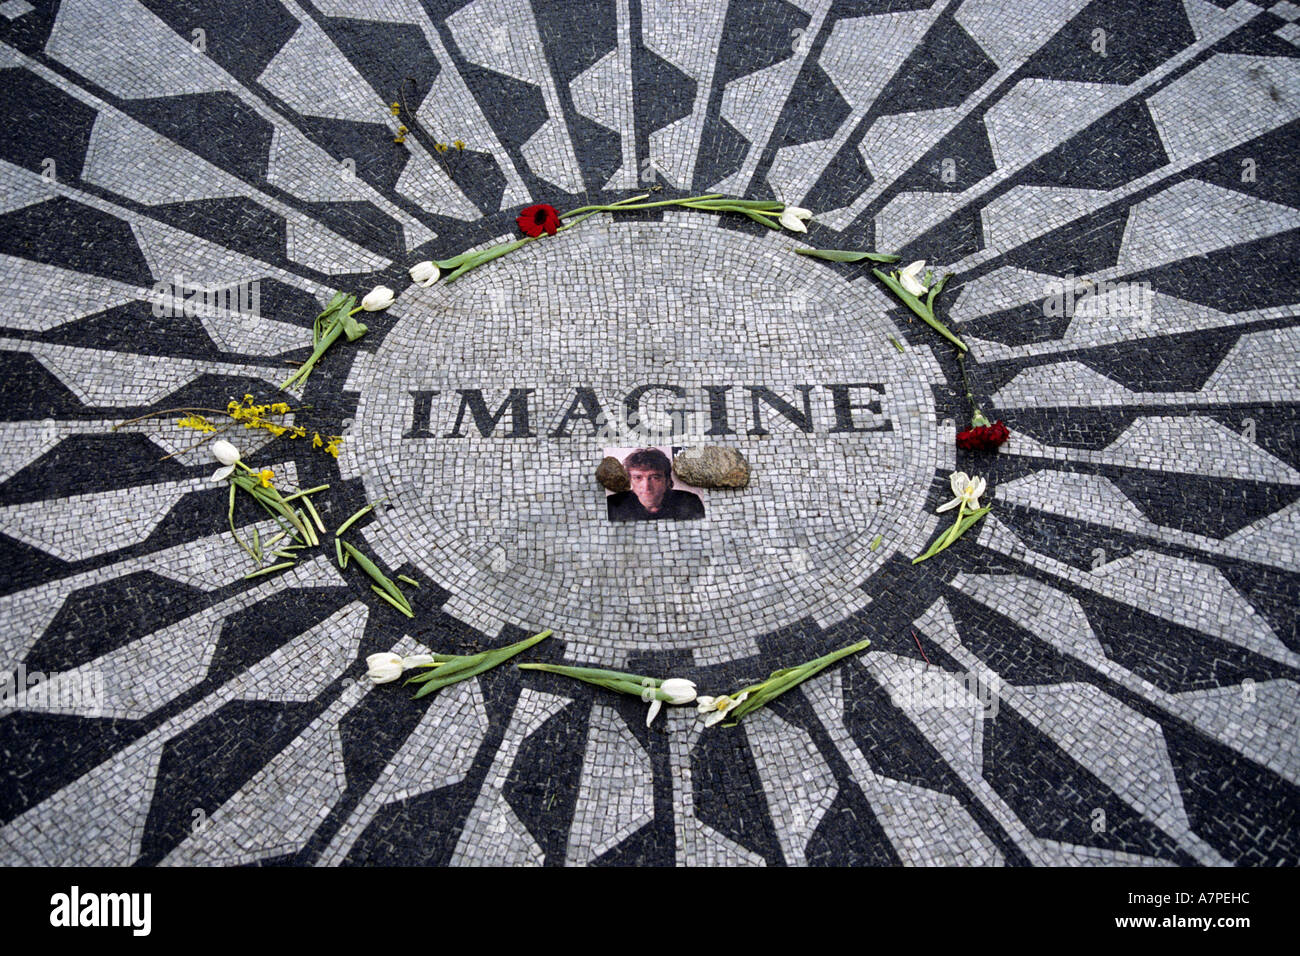 Imagine - memorial for John Lennon at Central Park, USA, New York City Stock Photo